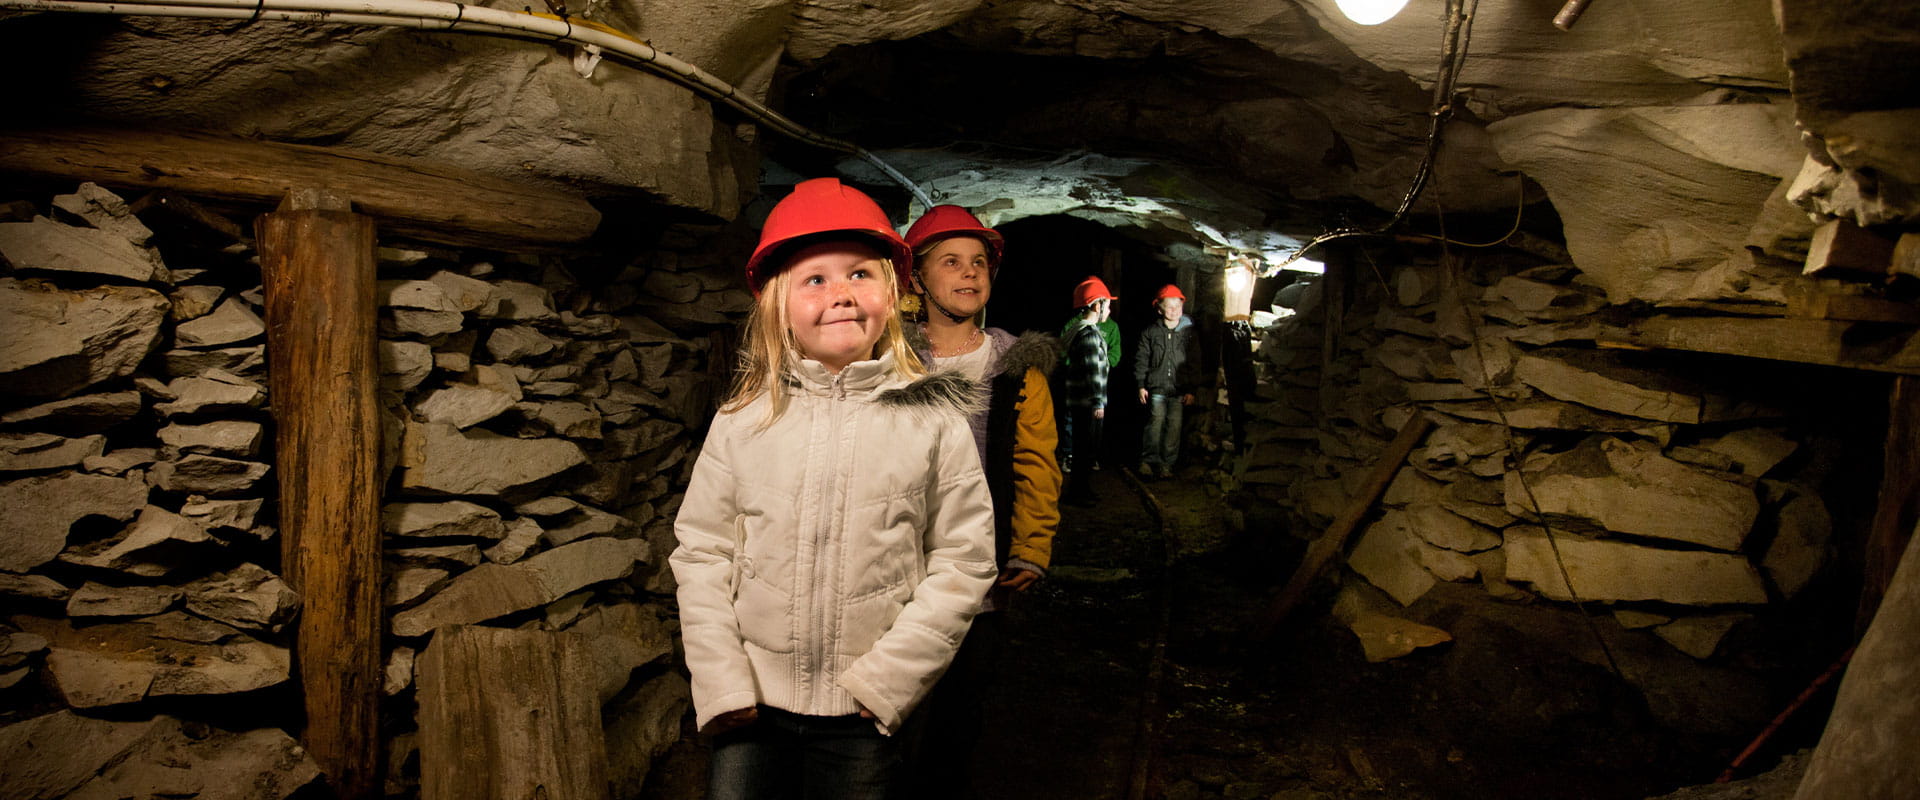 Four children wearing hard hats, explore a underground tunnel